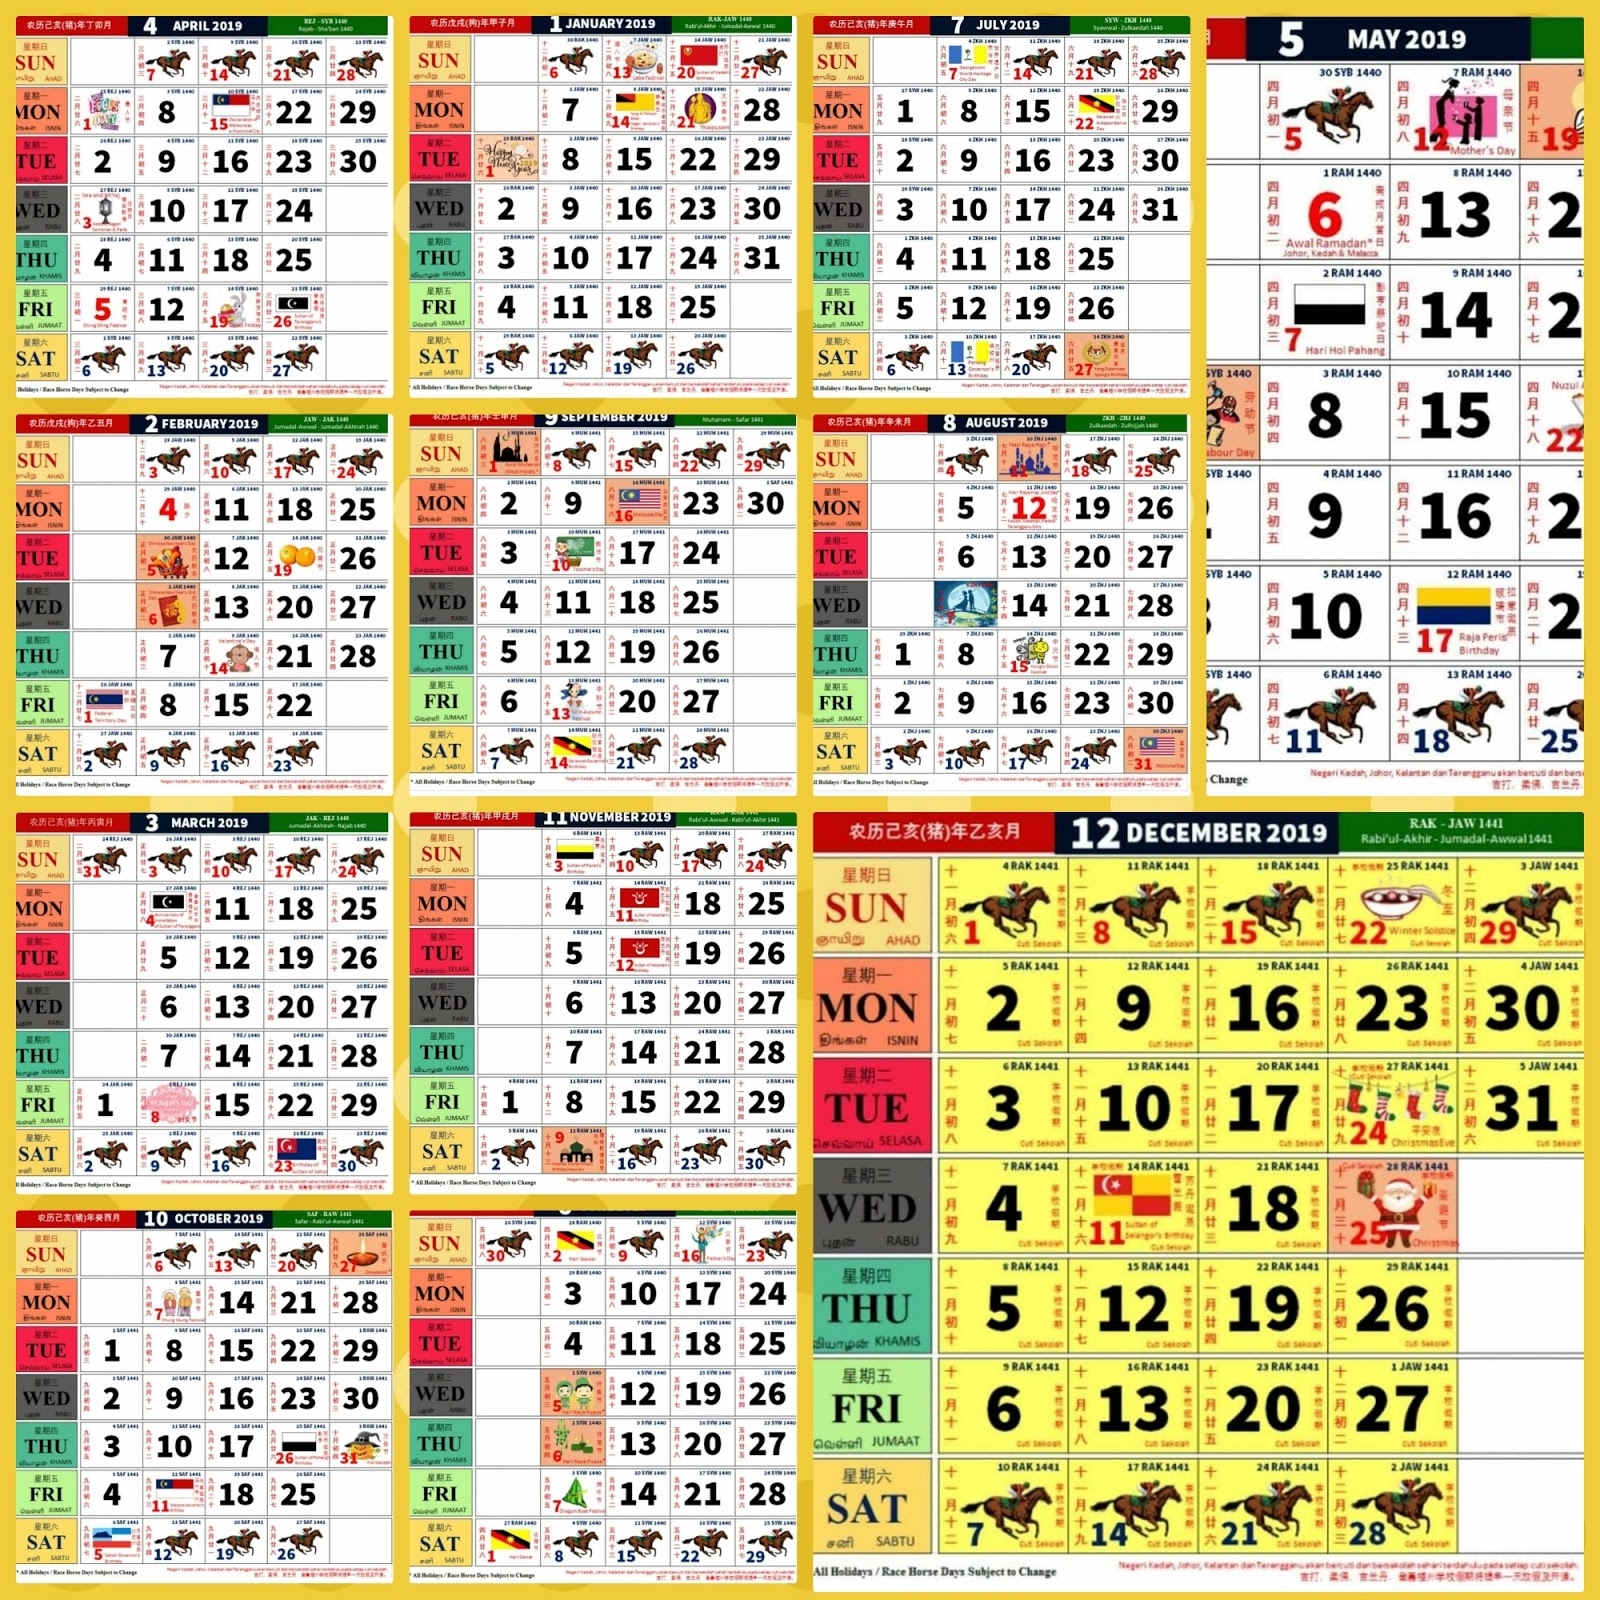 2021 Calendar Kuda - Nexta July 2021 Calendar Malaysia